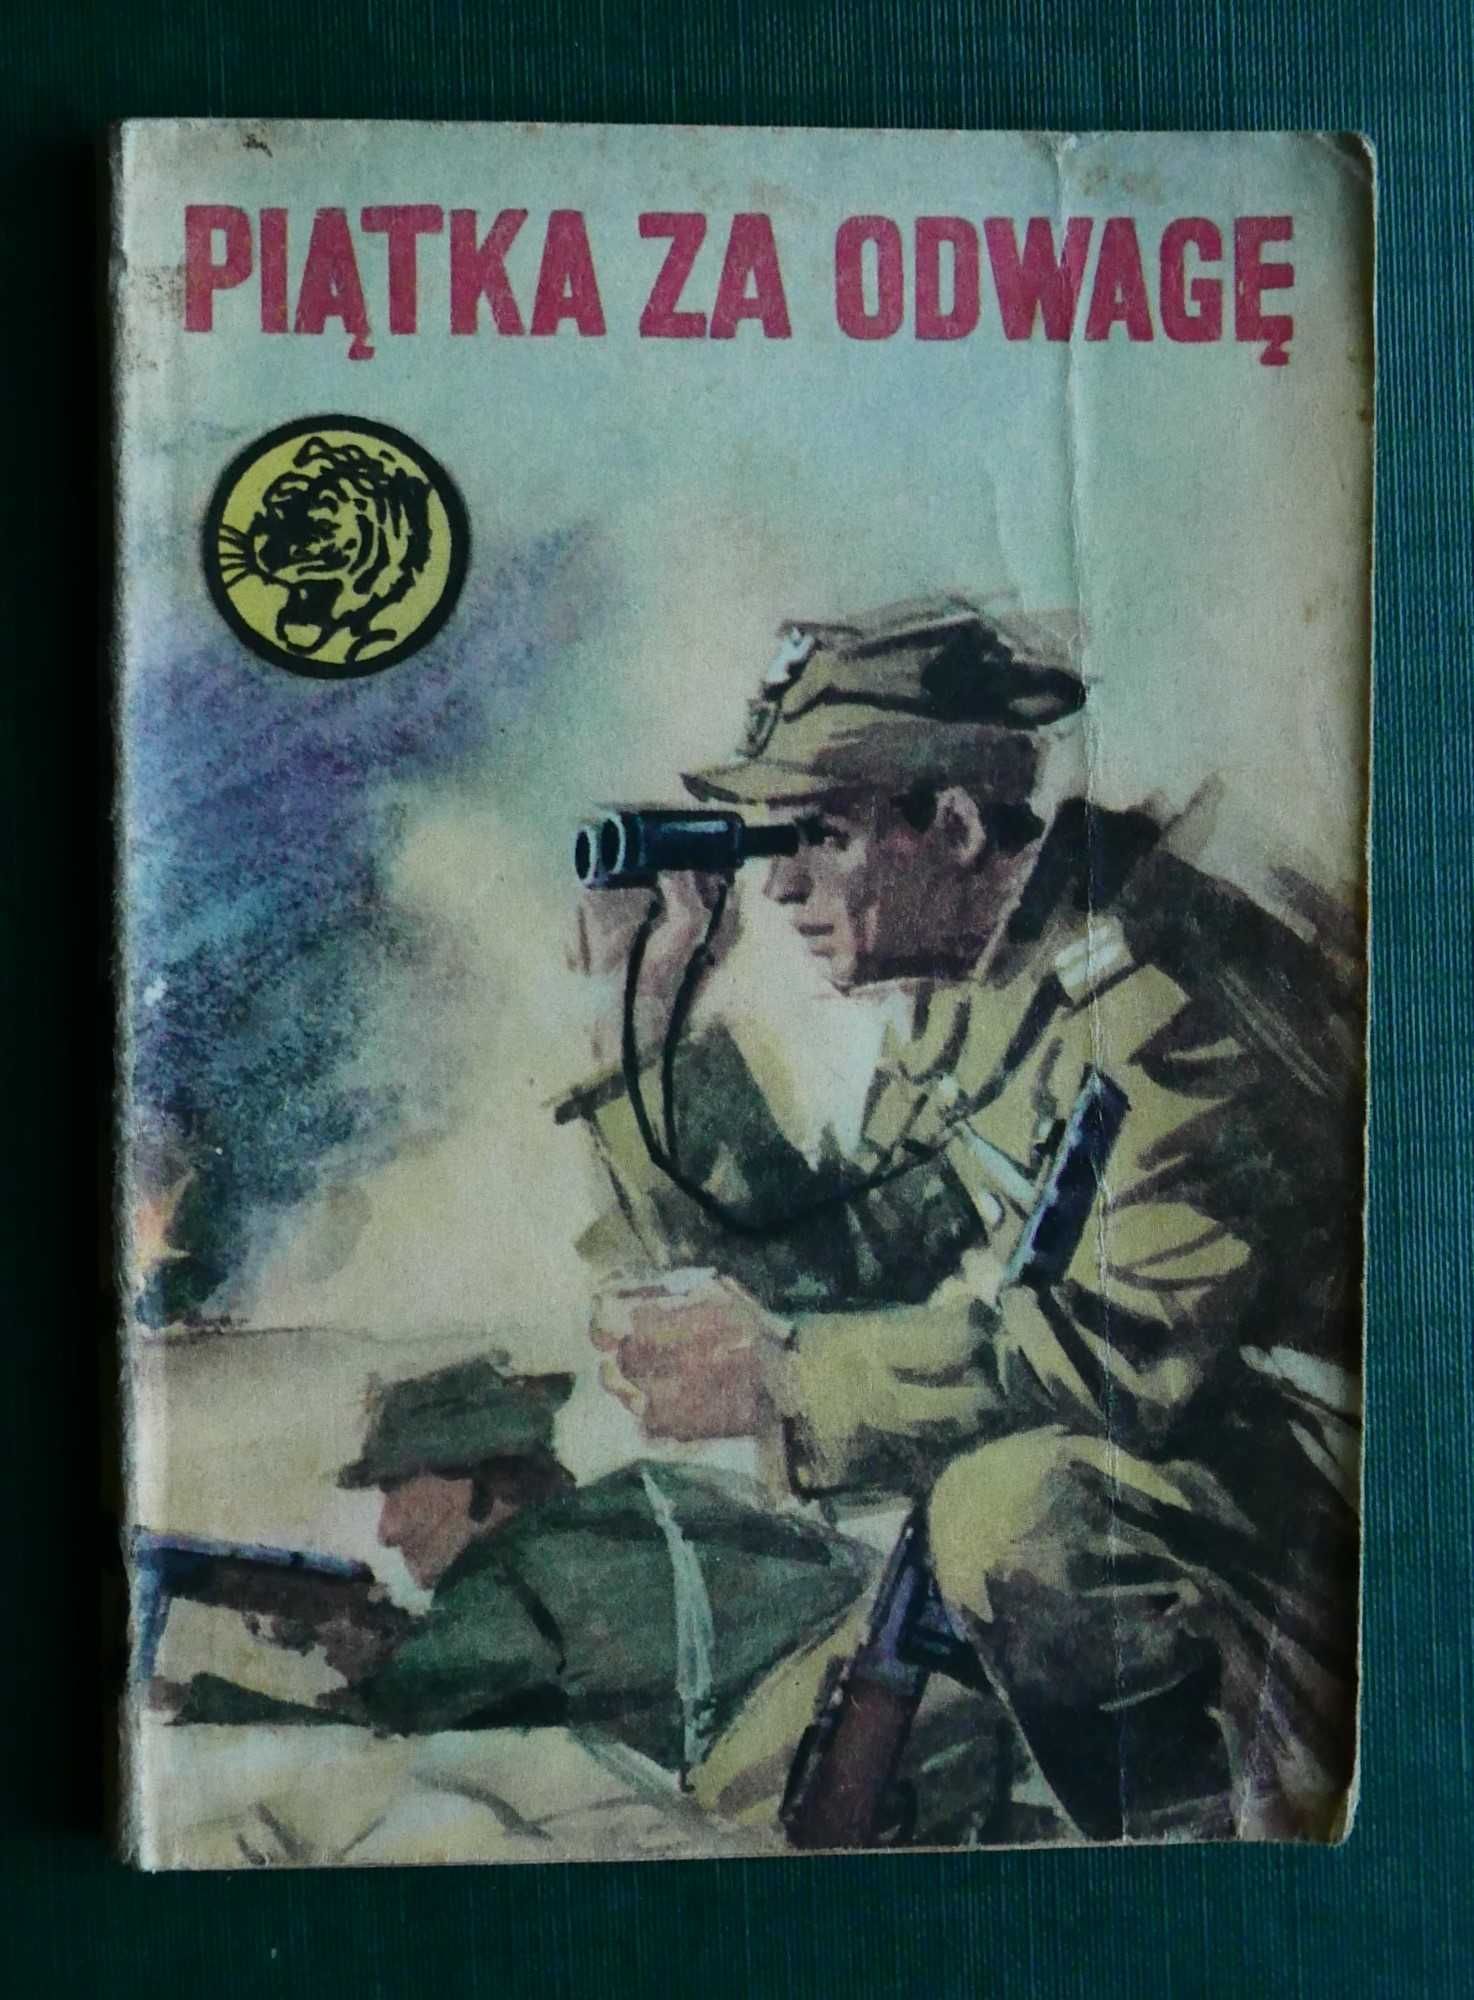 Piątka za odwagę - Bolesław Jagielski/Seria "Żółty Tygrys" Nr.17/1975r